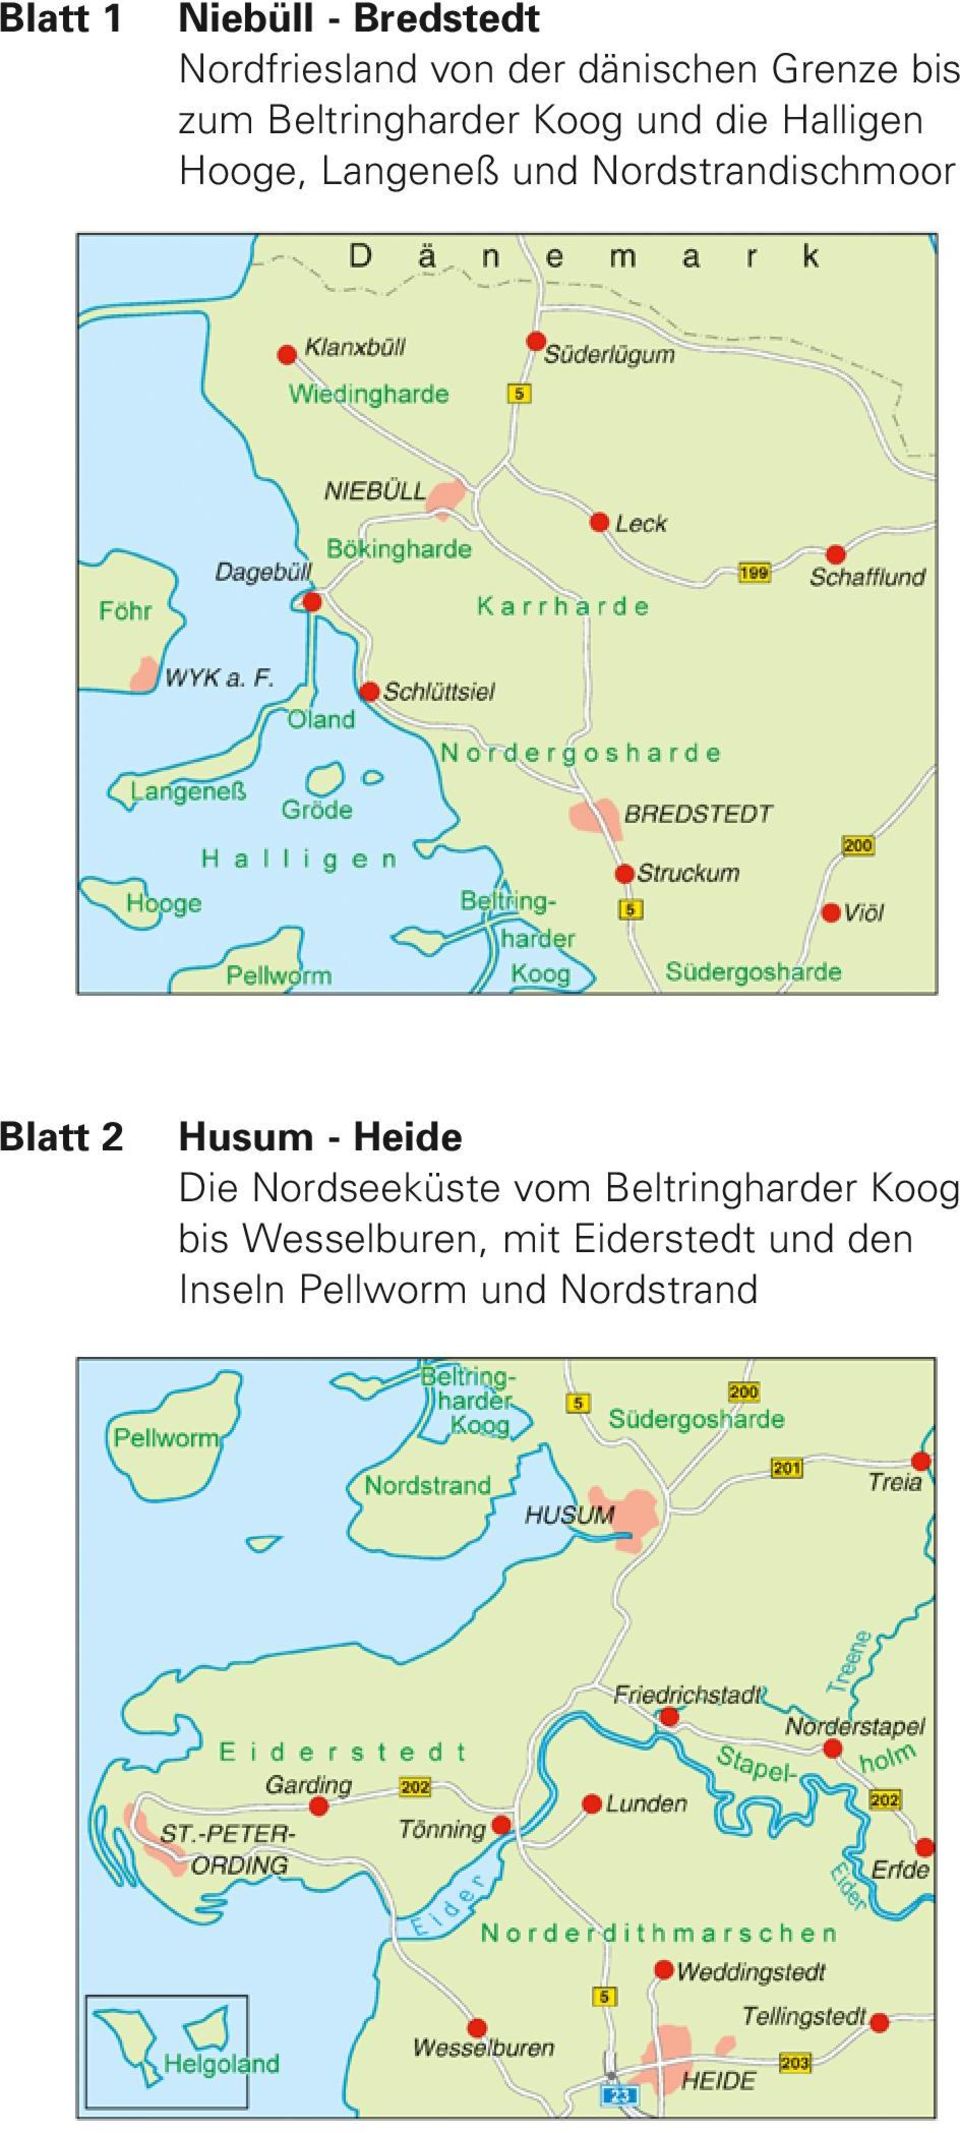 Nordstrandischmoor Blatt 2 Husum - Heide Die Nordseeküste vom